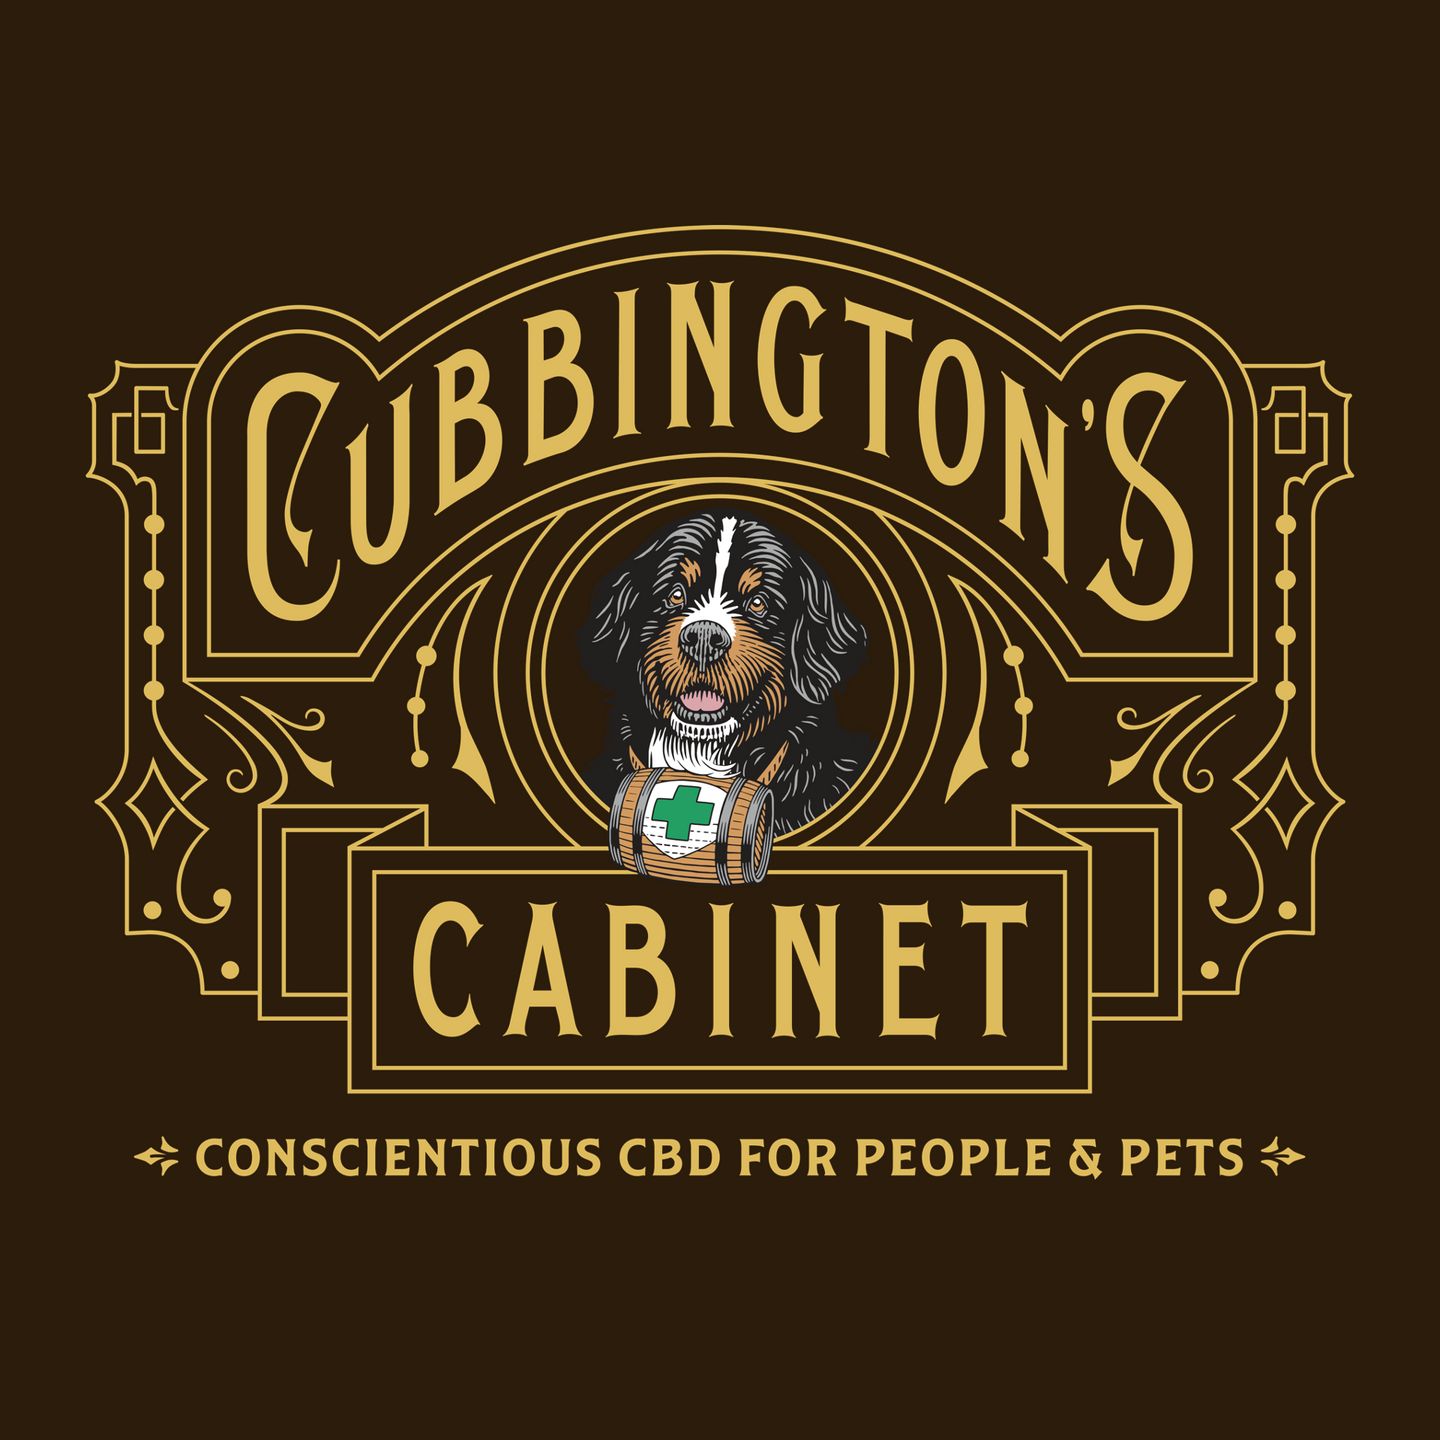 image feature Cubbington's Cabinet